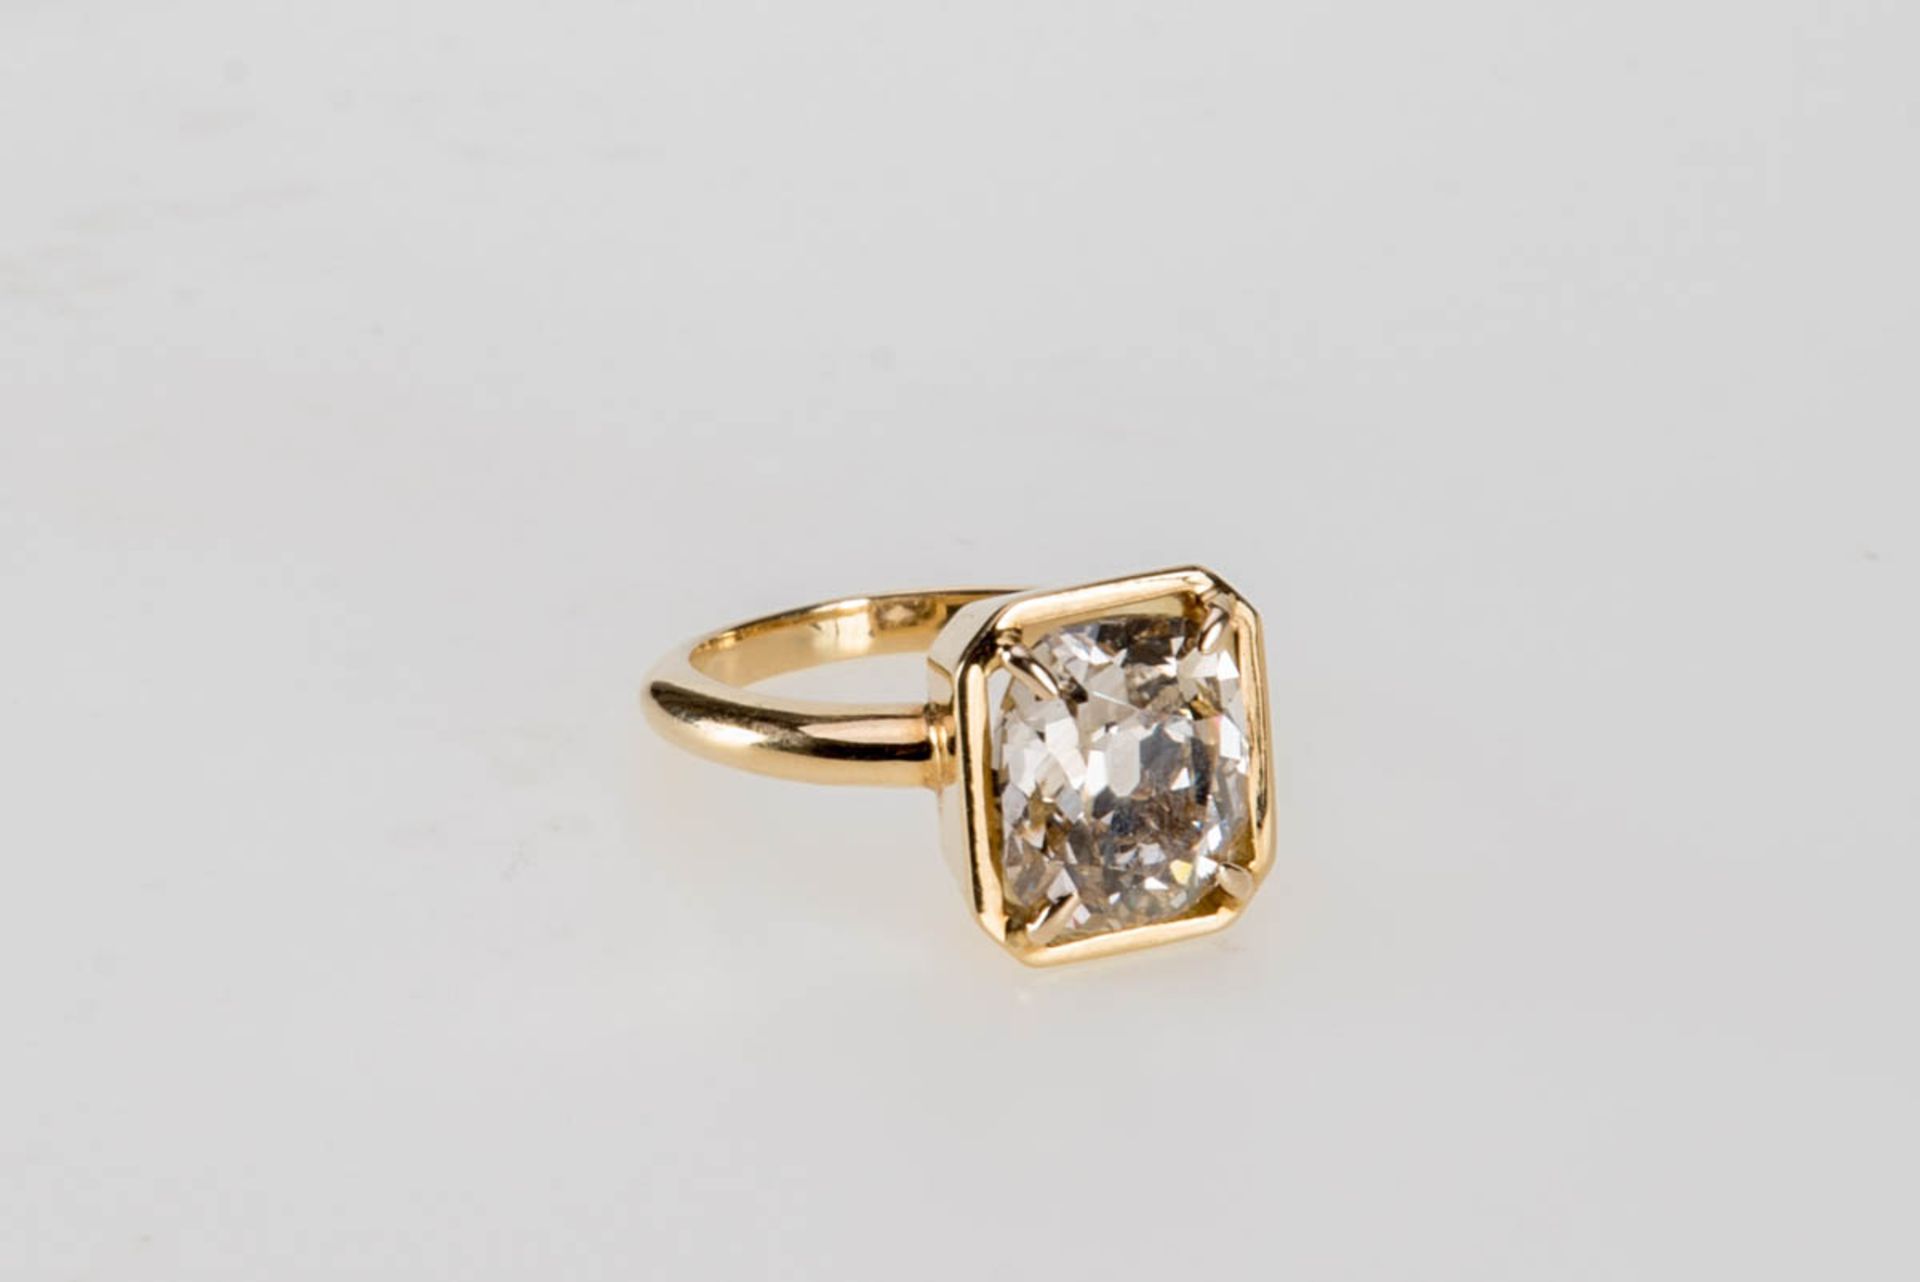 Repräsentativer Diamant-Solitär Ring 4,5 ct.750er Gelbgold. Glatte schmale Ringschiene, rechteckiger